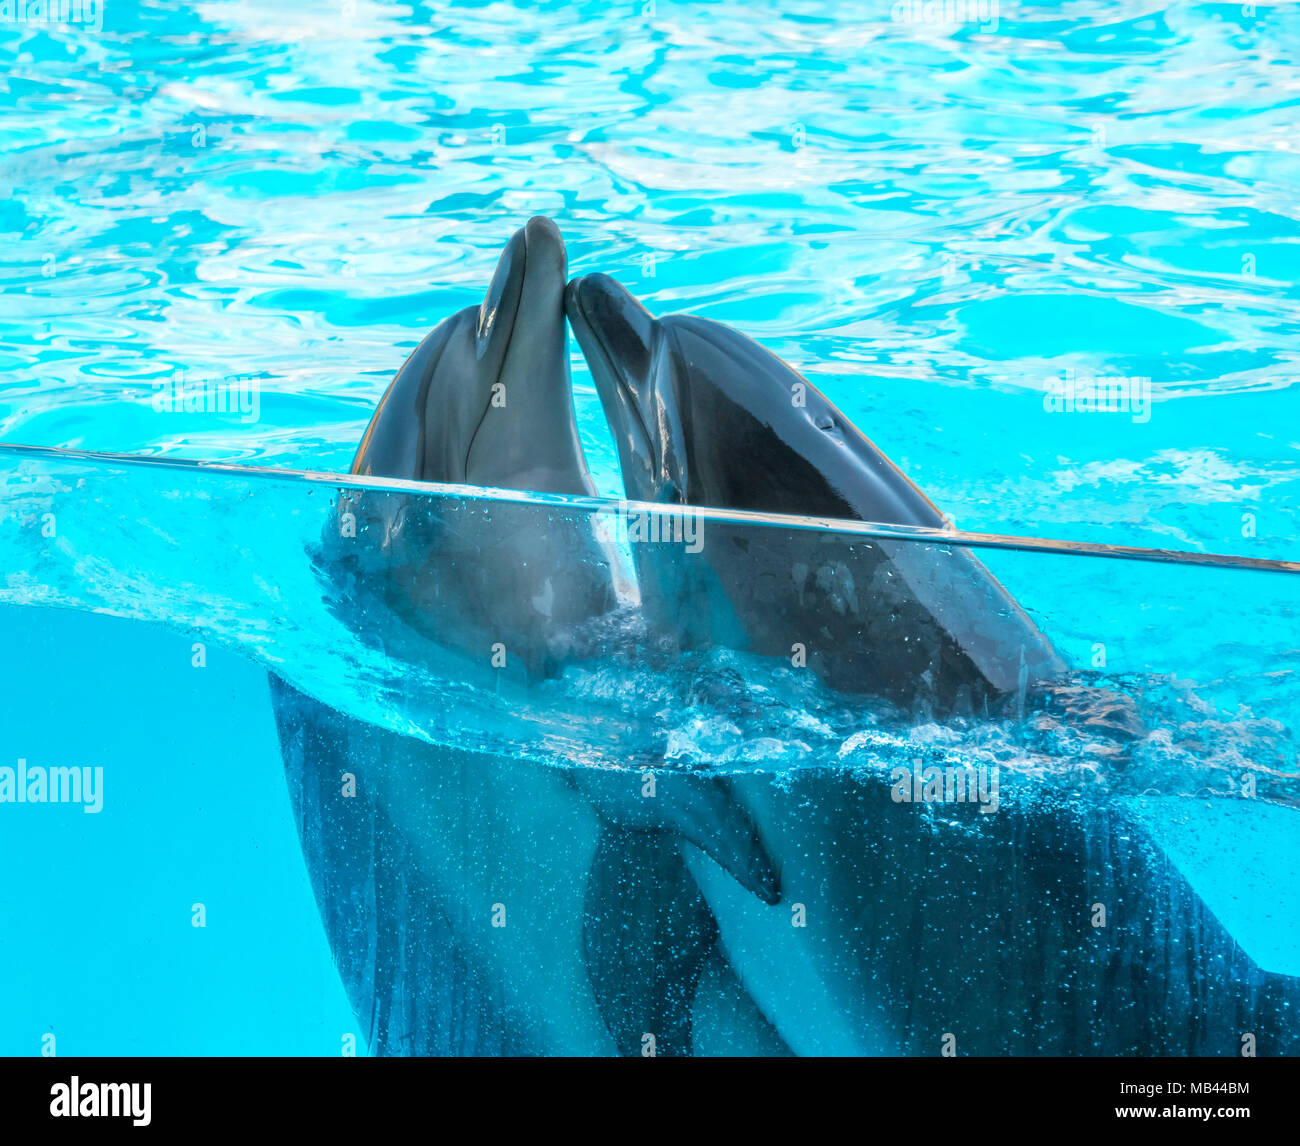 Süße Delfine Stockfotos und -bilder Kaufen - Alamy